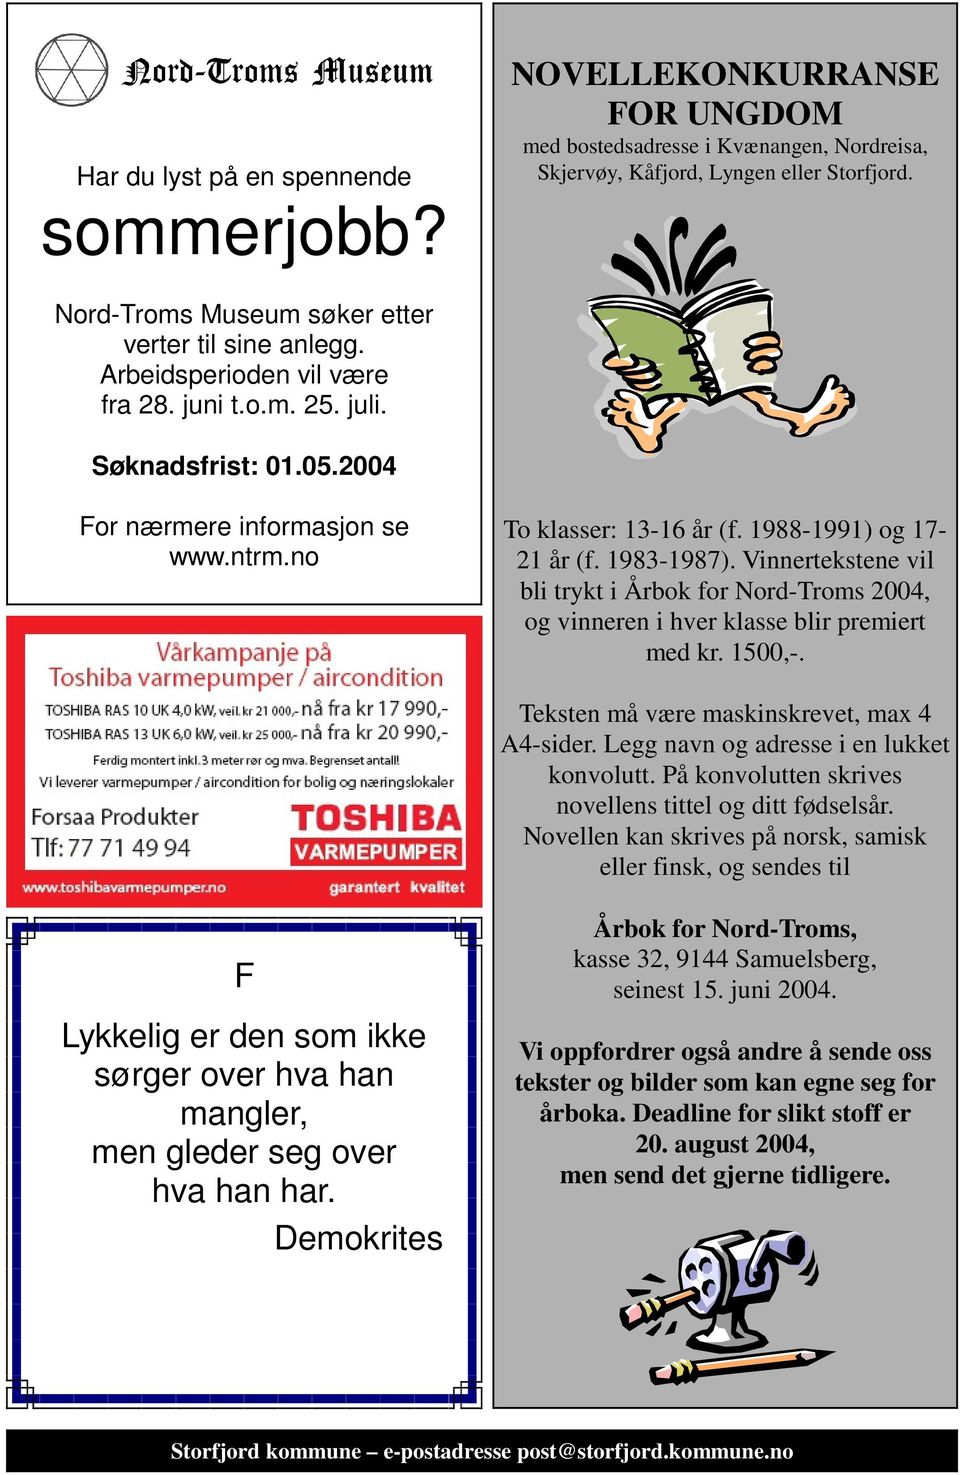 1988-1991) og 17-21 år (f. 1983-1987). Vinnertekstene vil bli trykt i Årbok for Nord-Troms 2004, og vinneren i hver klasse blir premiert med kr. 1500,-. Teksten må være maskinskrevet, max 4 A4-sider.